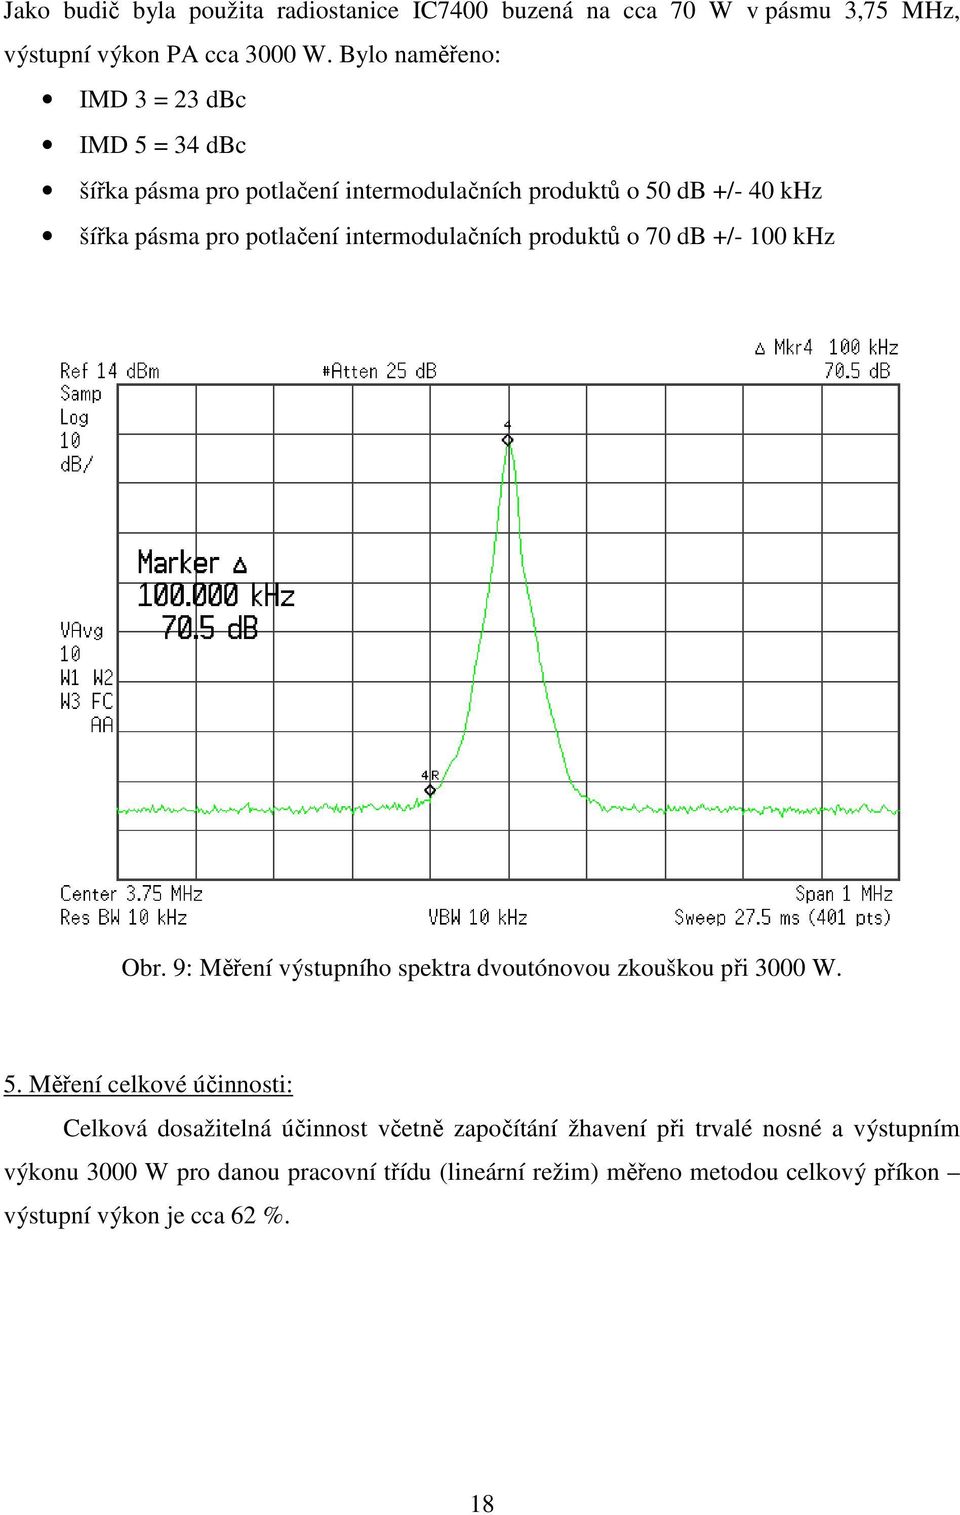 intermodulačních produktů o 70 db +/- 100 khz Obr. 9: Měření výstupního spektra dvoutónovou zkouškou při 3000 W. 5.